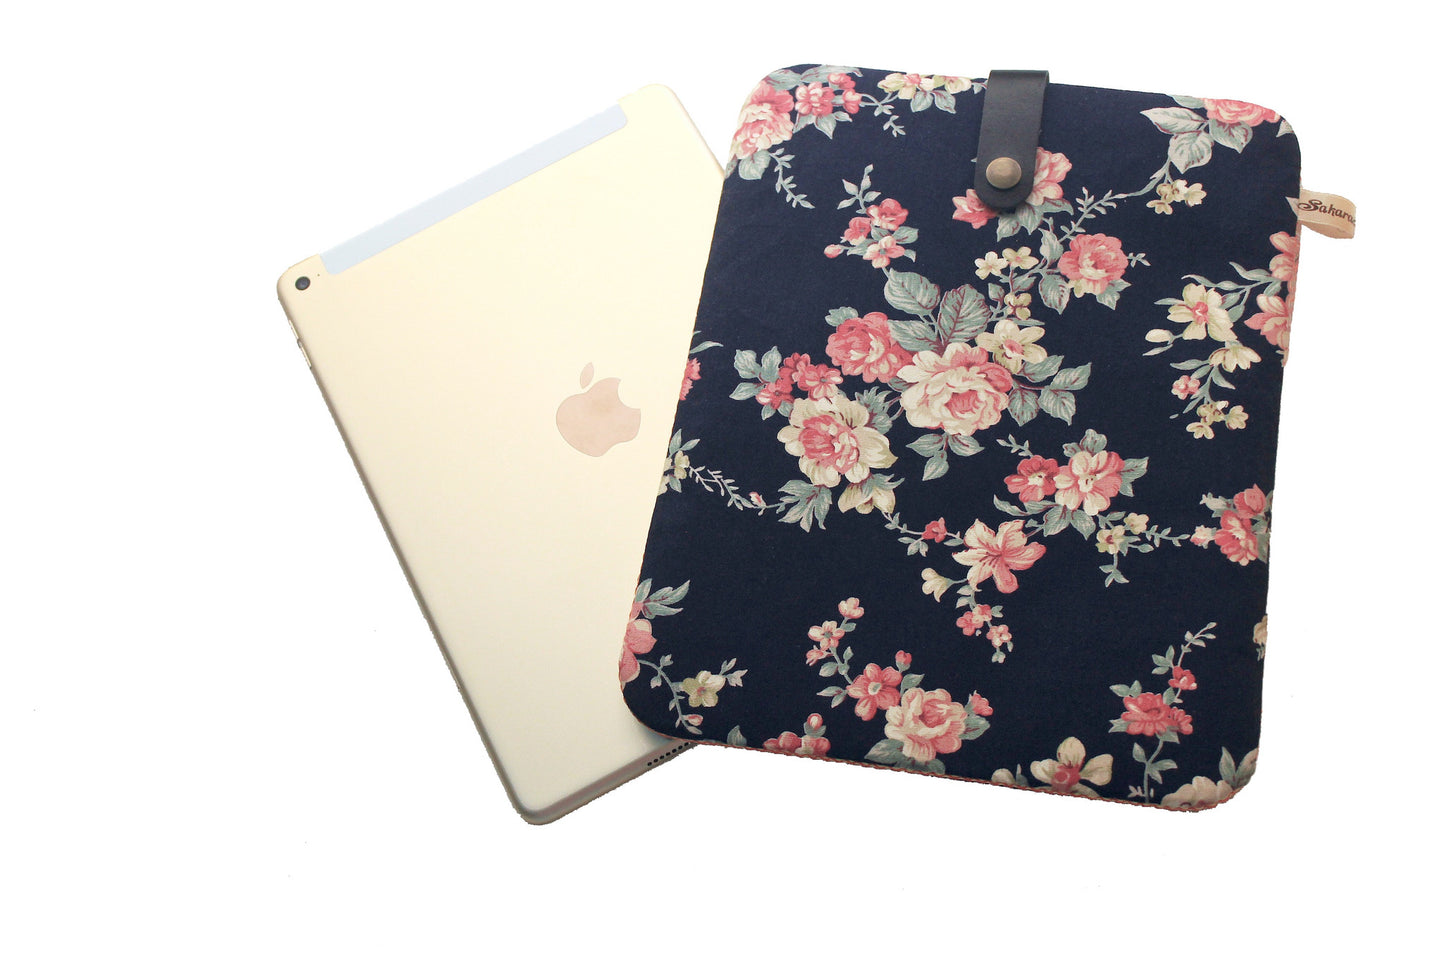 Apple iPad Air 2 এবং iPad Pro 9.7 ইঞ্চি কভার - সেরা 9.7 ইঞ্চি ট্যাবলেট কেস